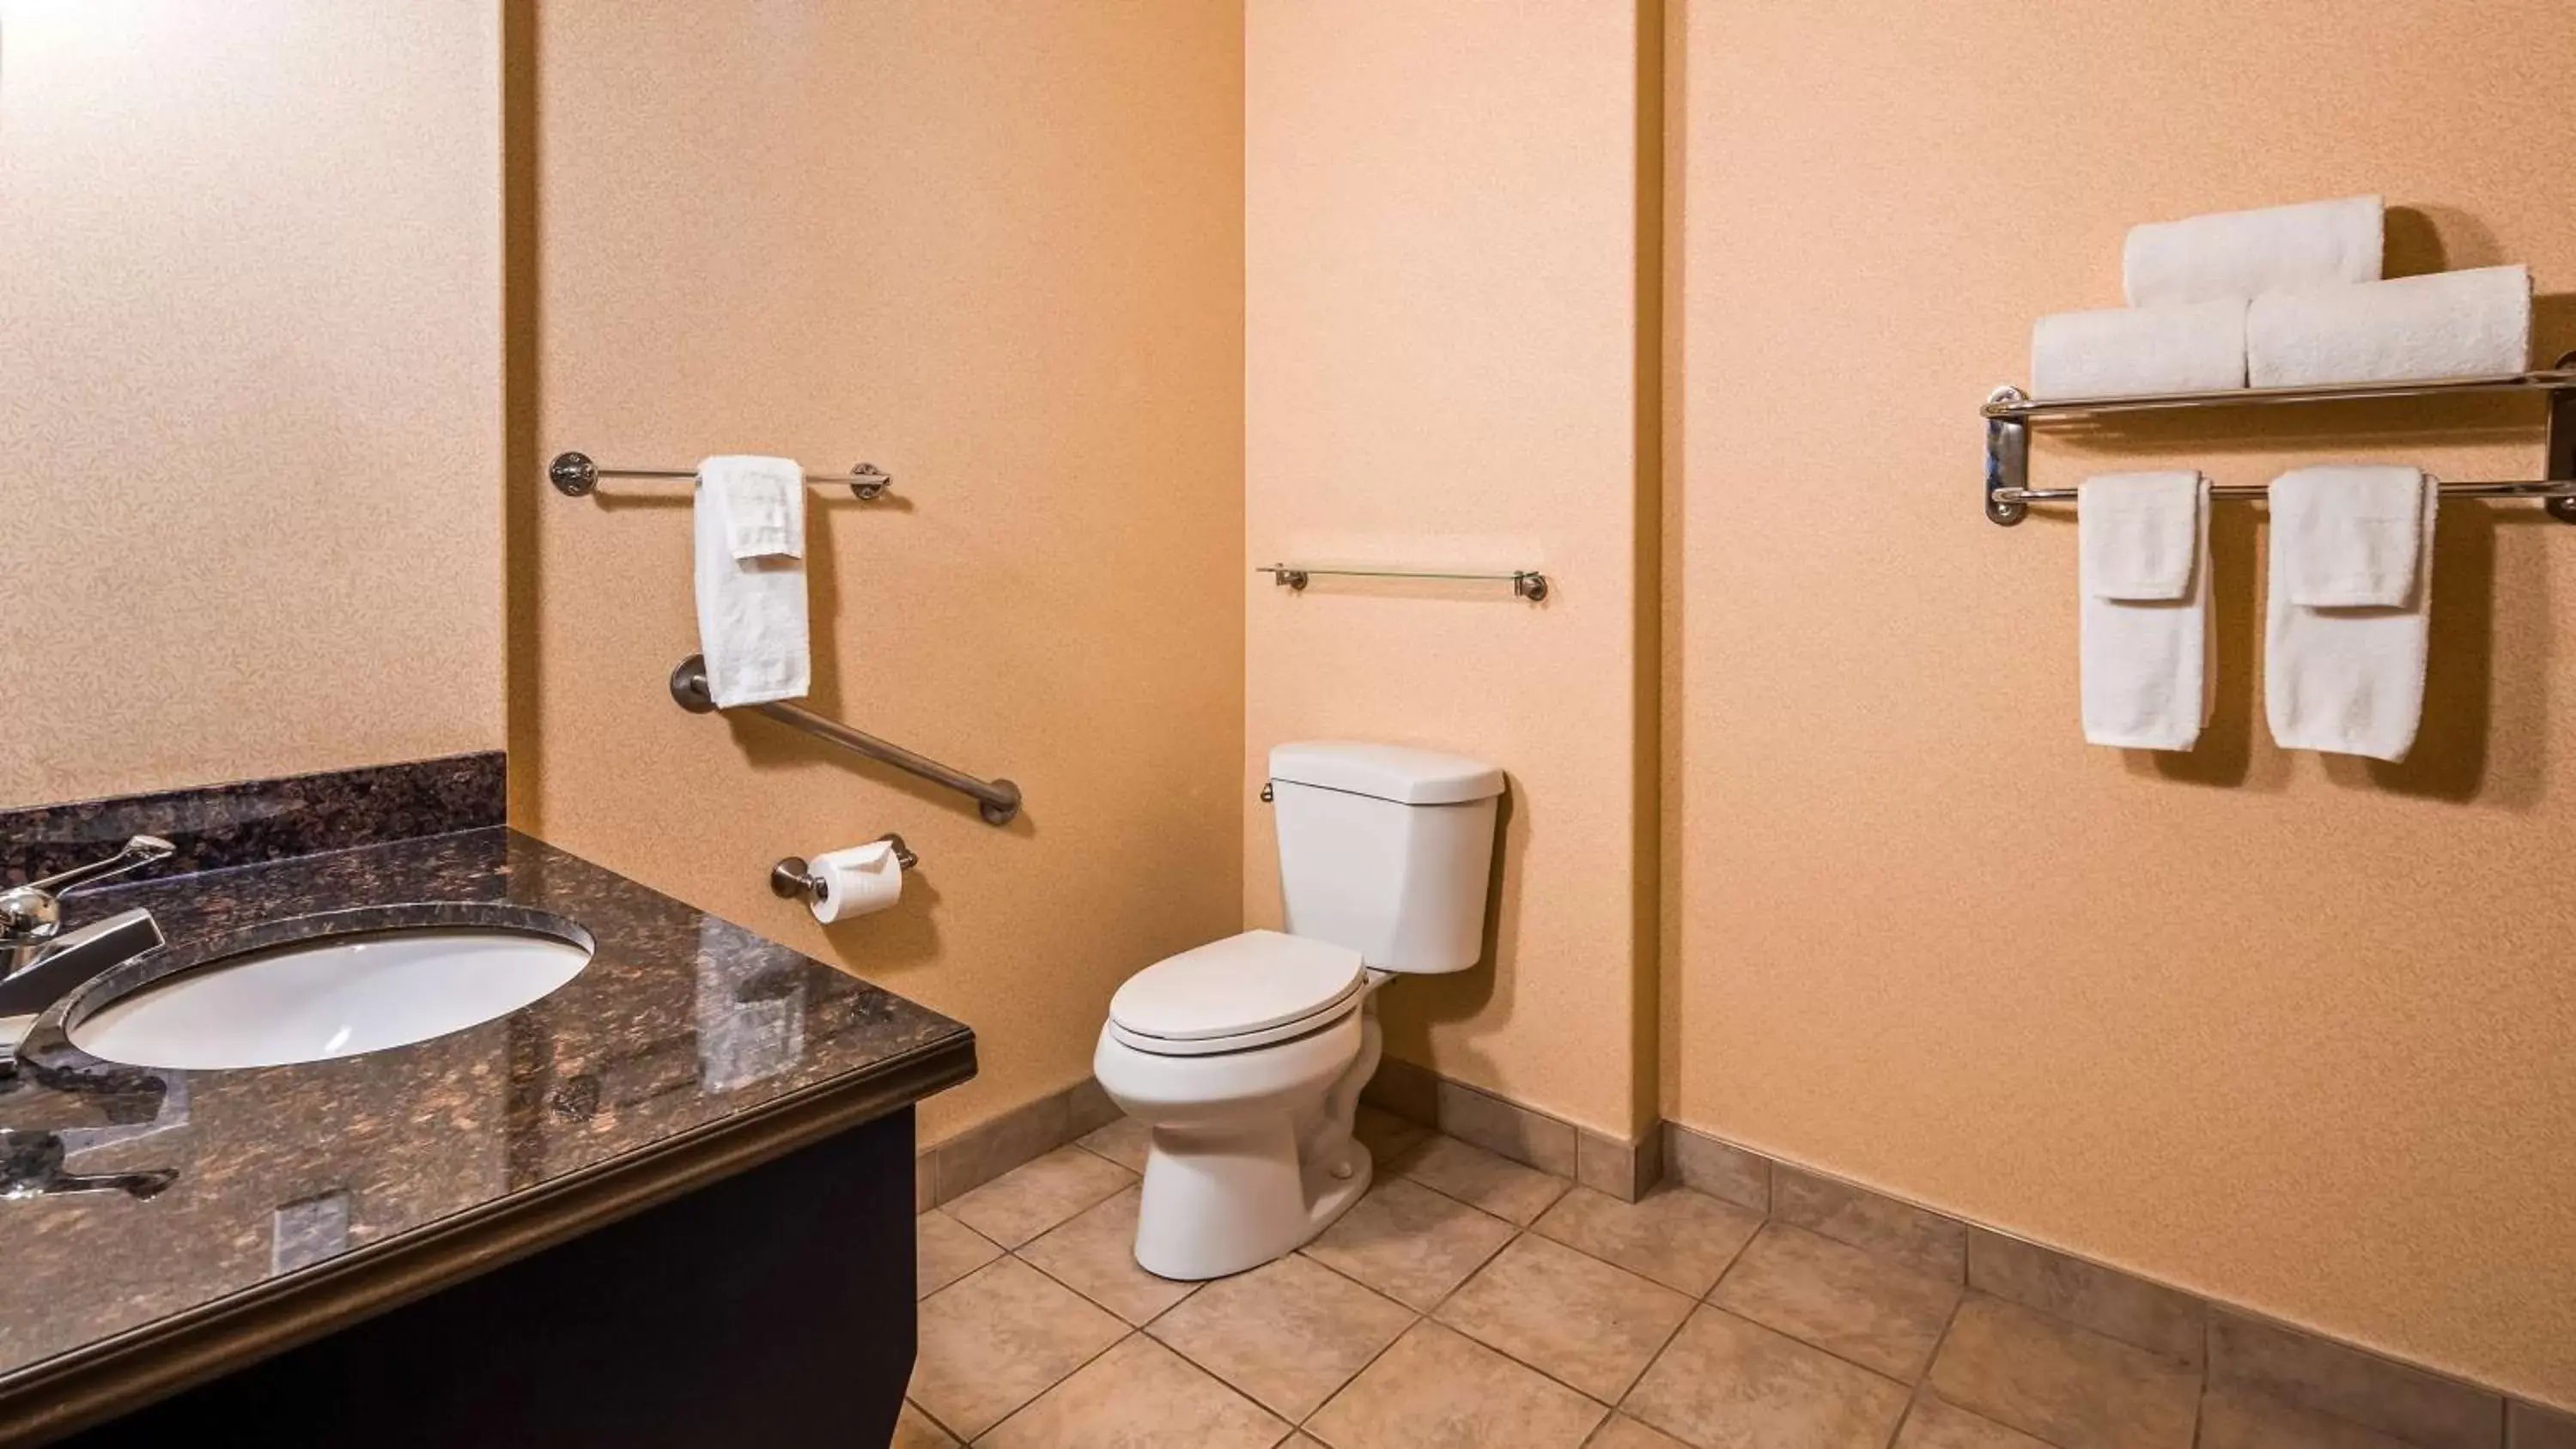 Photo of the whole room, Bathroom in Best Western Plus Estevan Inn & Suites